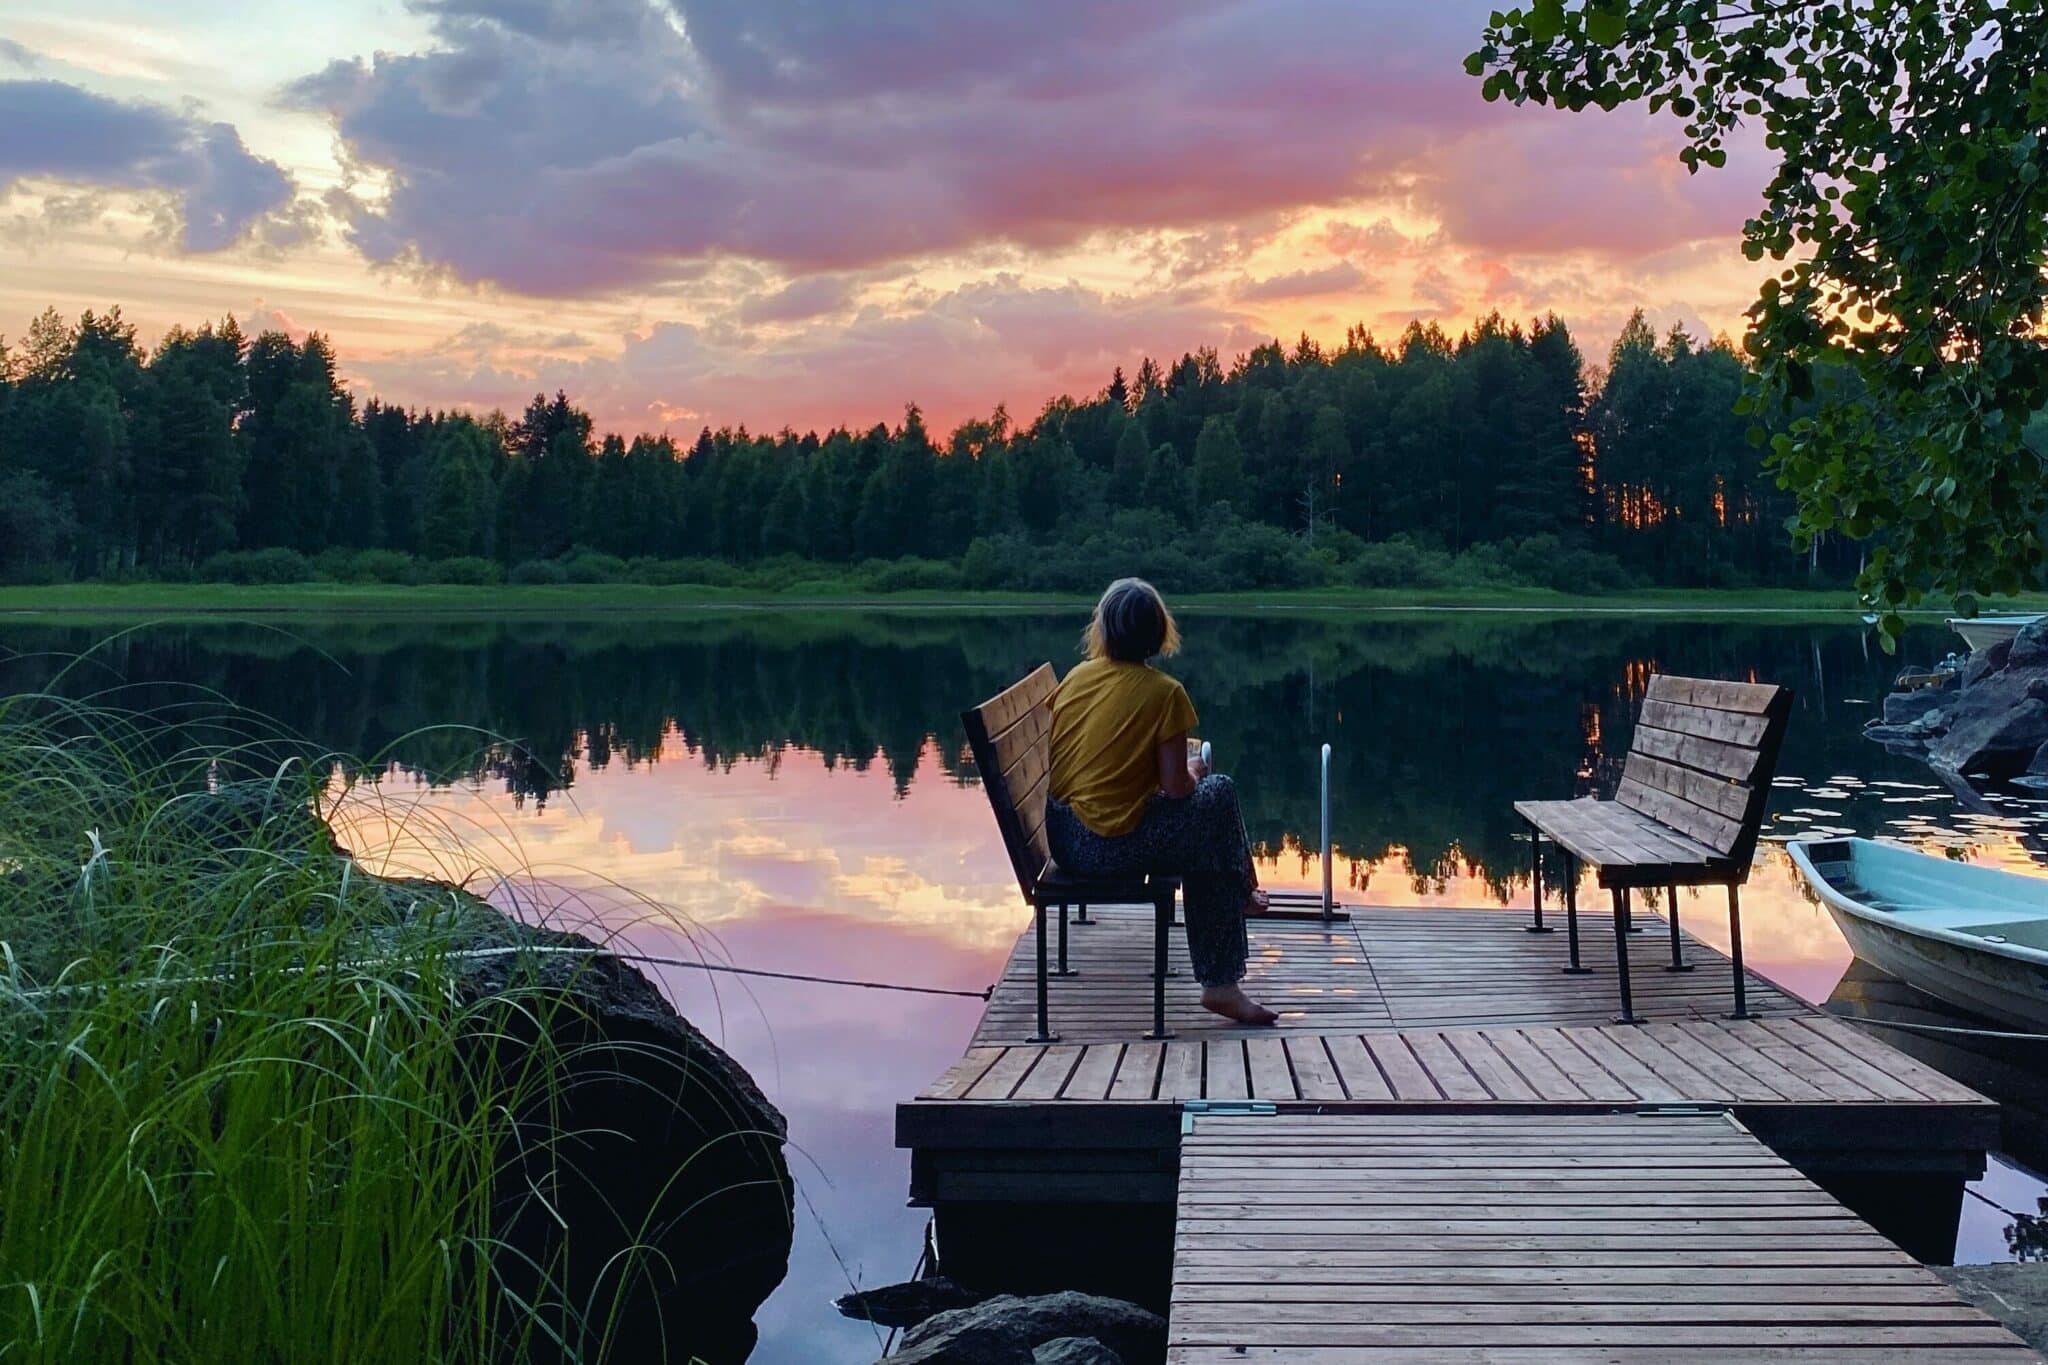 Billedet viser en kvinde, der sidder på en bænk på en badebro. I baggrunden kan man se en sø og over den en pinkfarvet solnedgang.